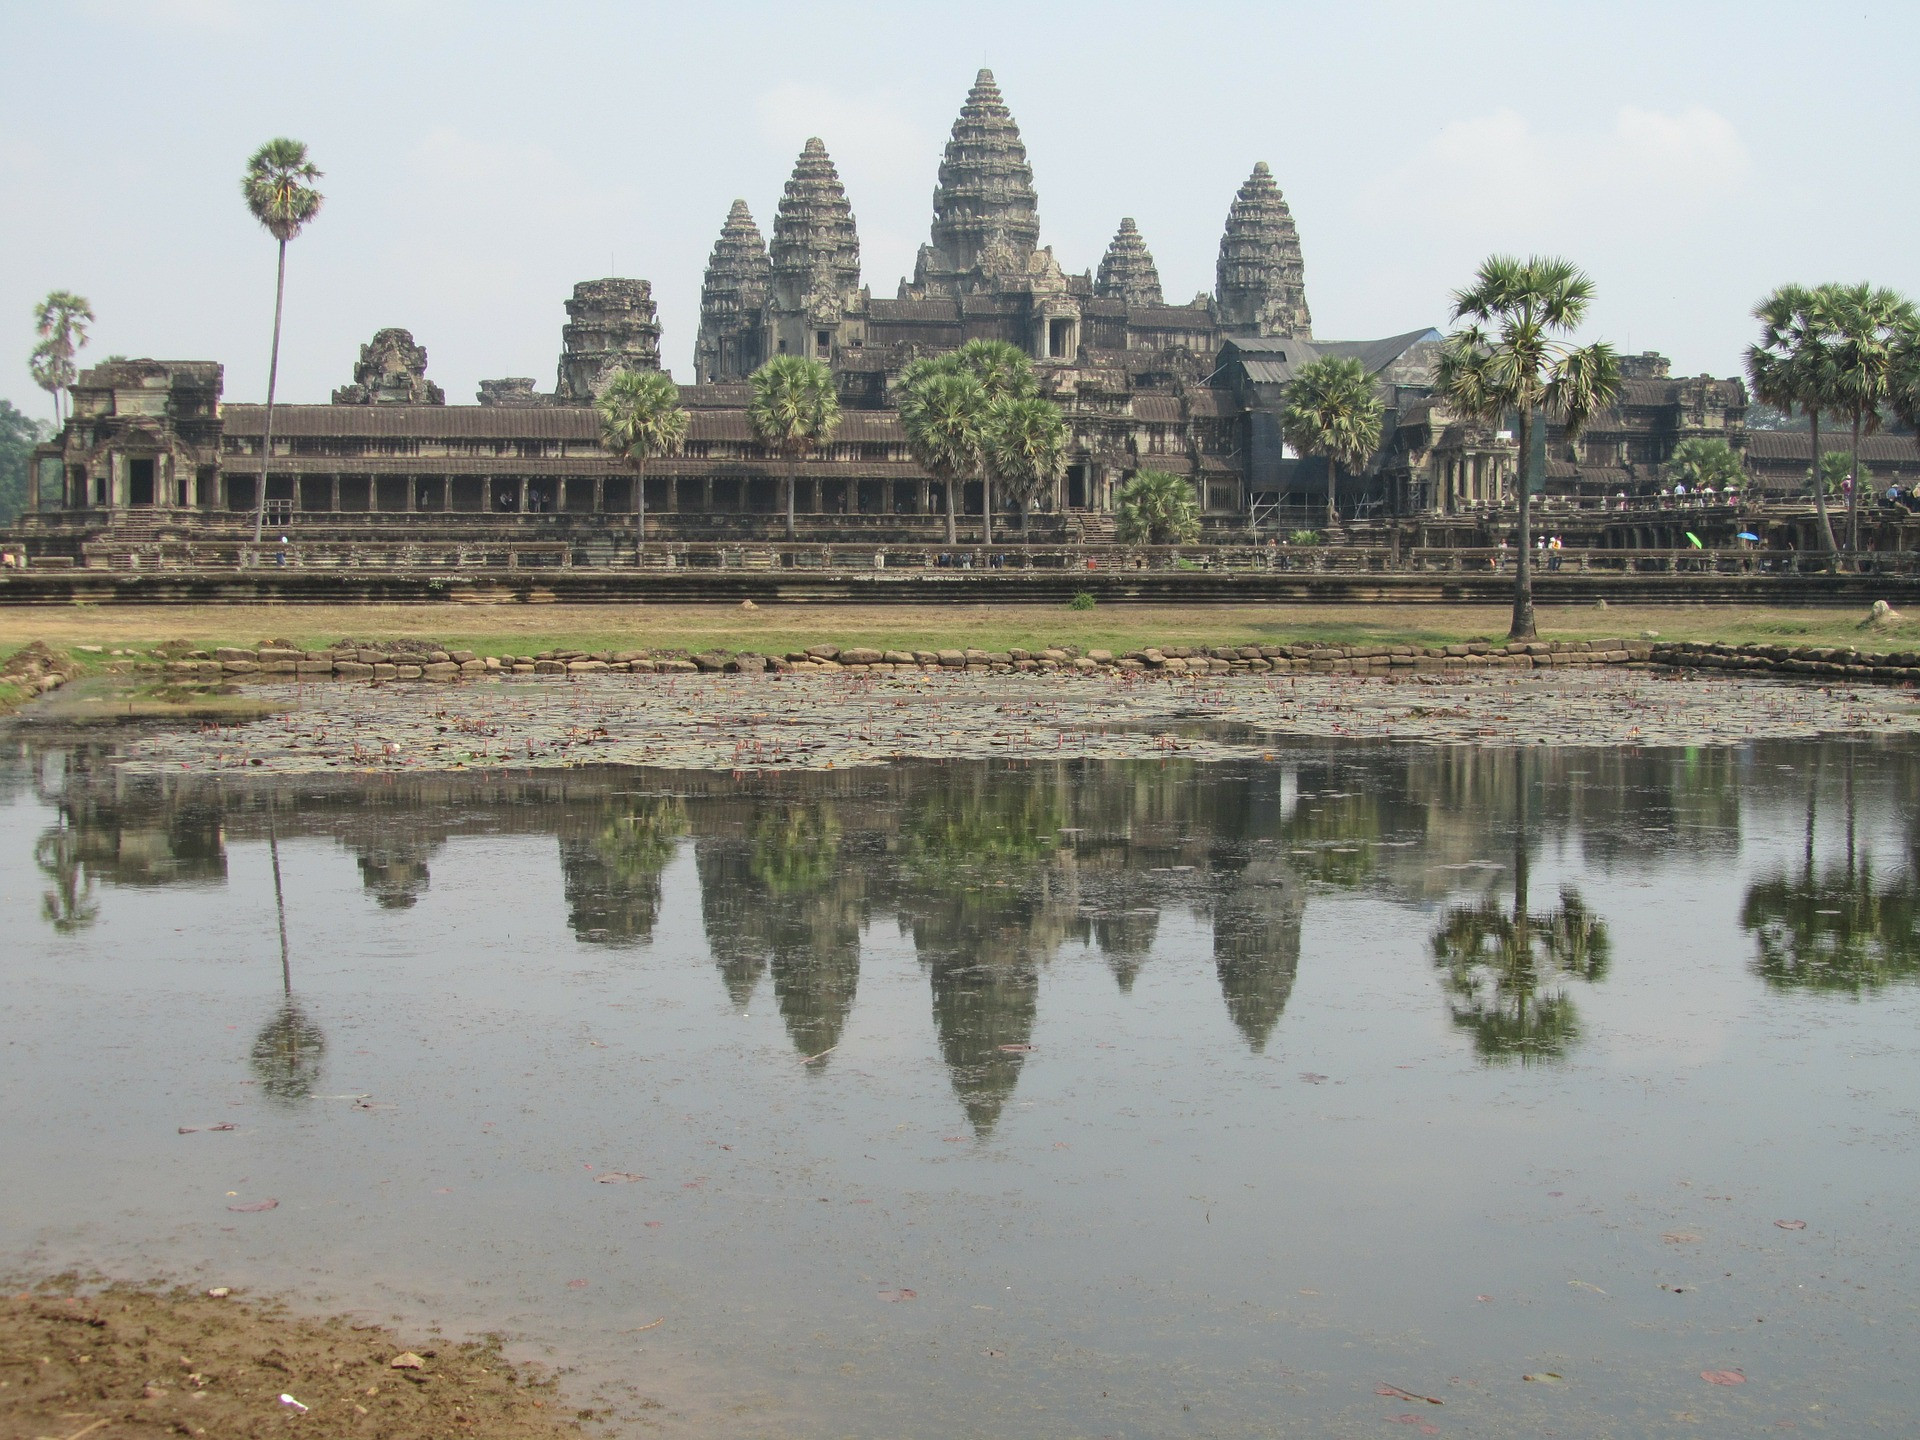 Európania o tomto chrámovom komplexe netušili až do 14. storočia. Je jedným z najlepších príkladov khmérskeho stavebného štýlu. Pohľad naňho je ohromujúci najmä v období dažďov: široká priekopa naplnená vodou spôsobuje, že chrám vyzerá ako ostrov uprostred oceánu.